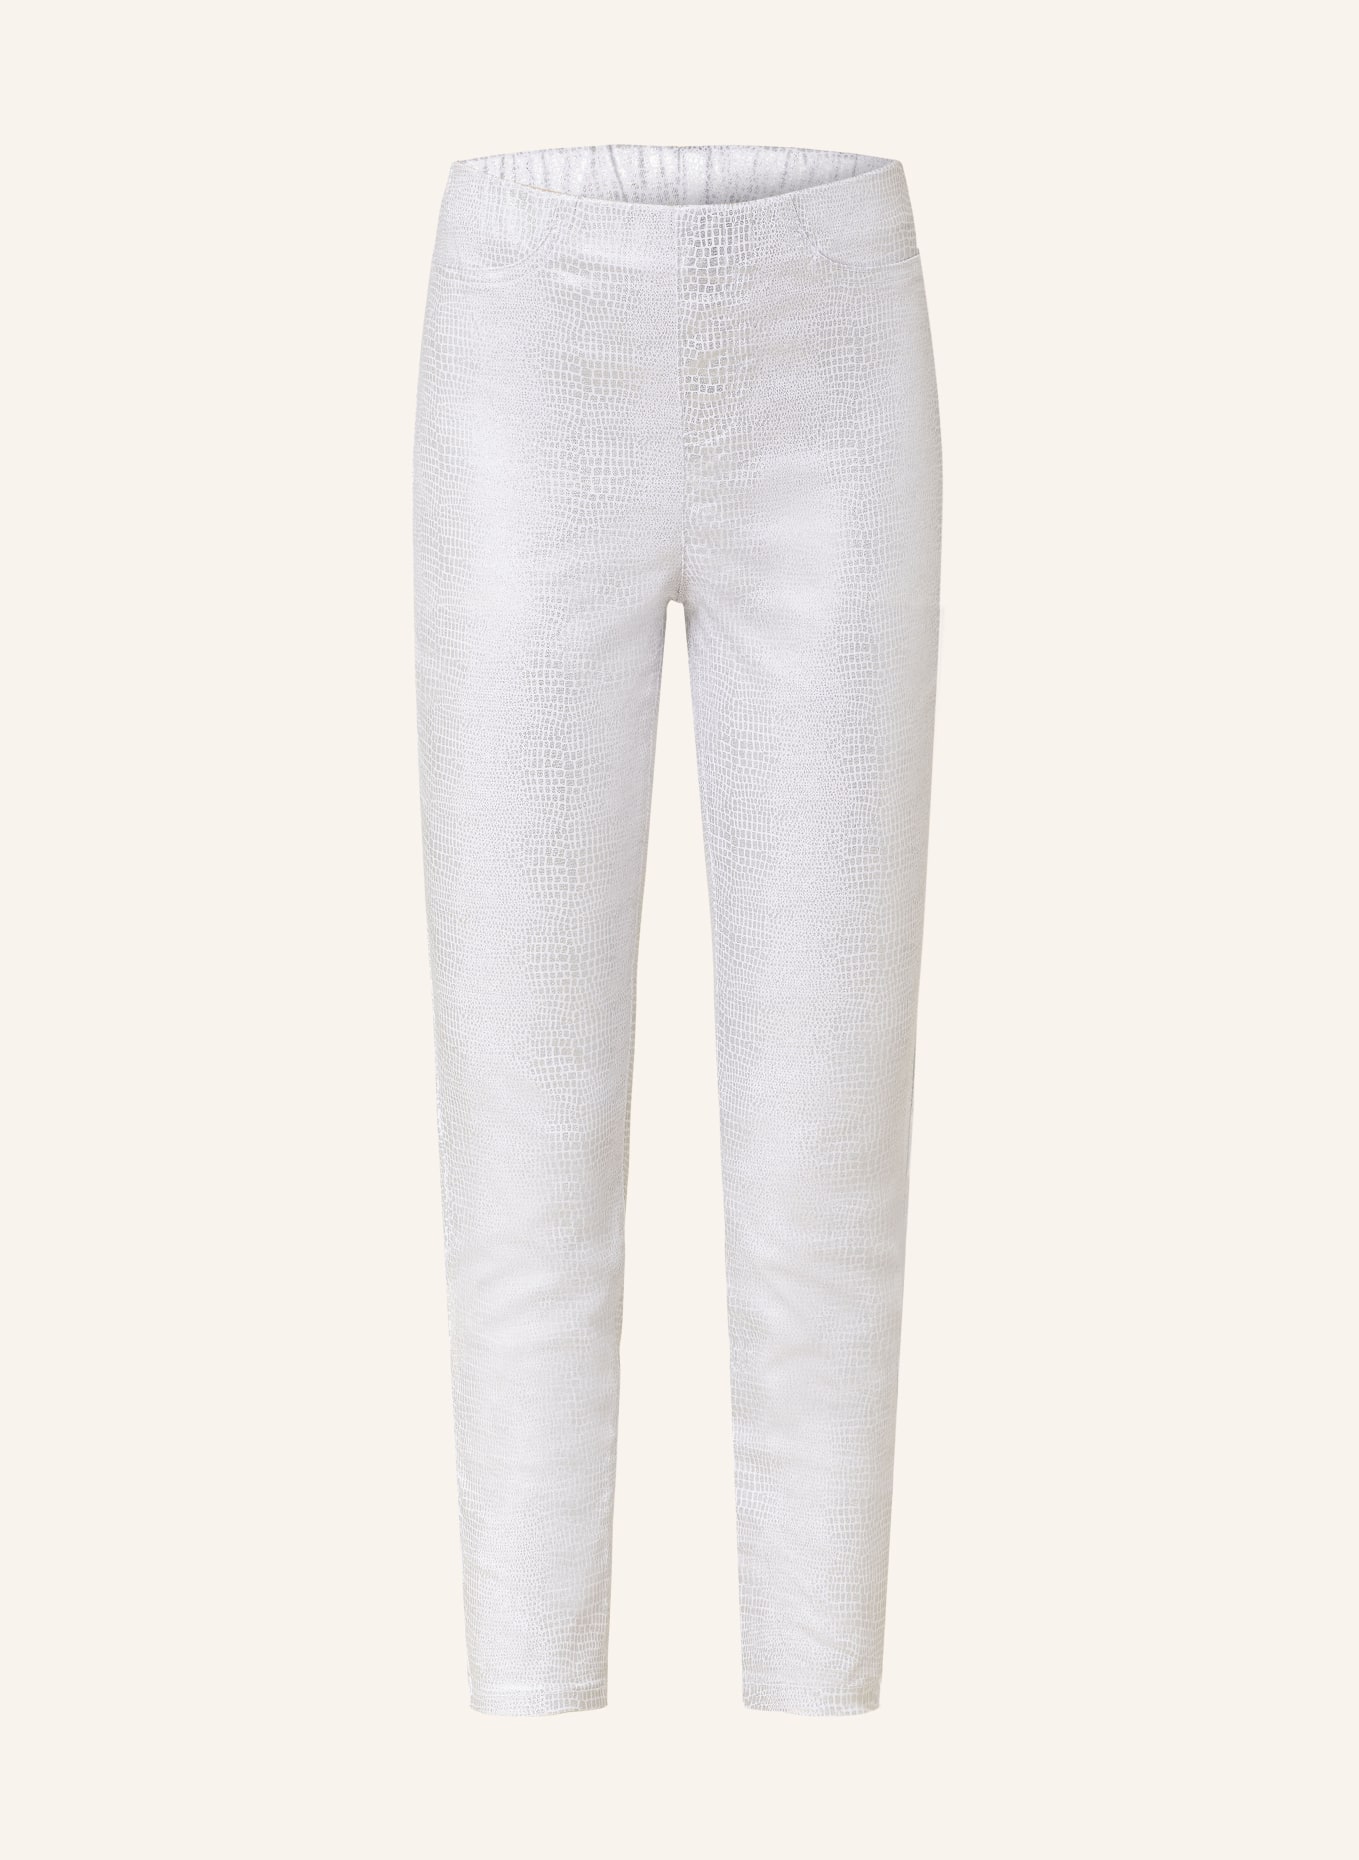 Joseph Ribkoff 7/8 pants, Color: WHITE/ SILVER (Image 1)